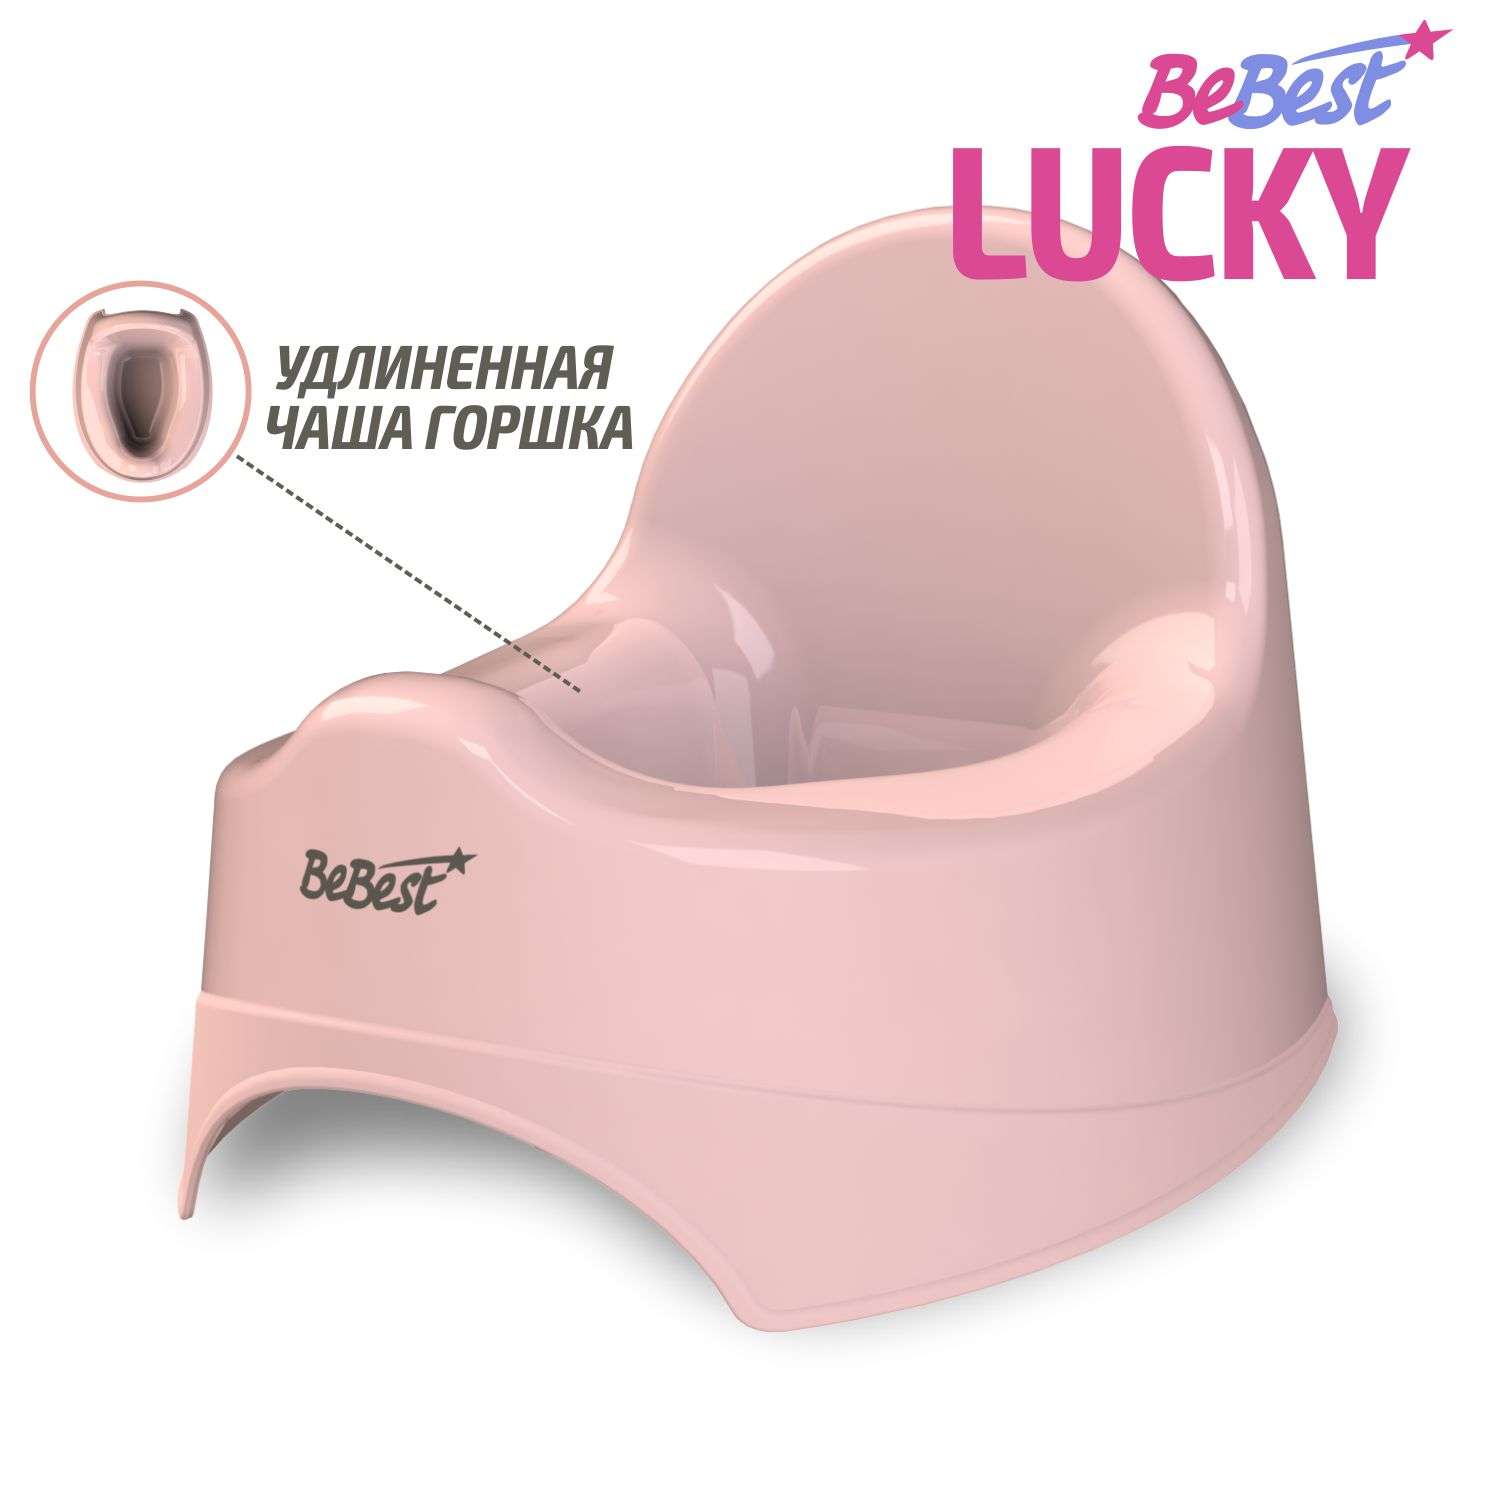 Горшок детский BeBest Lucky розовый - фото 1